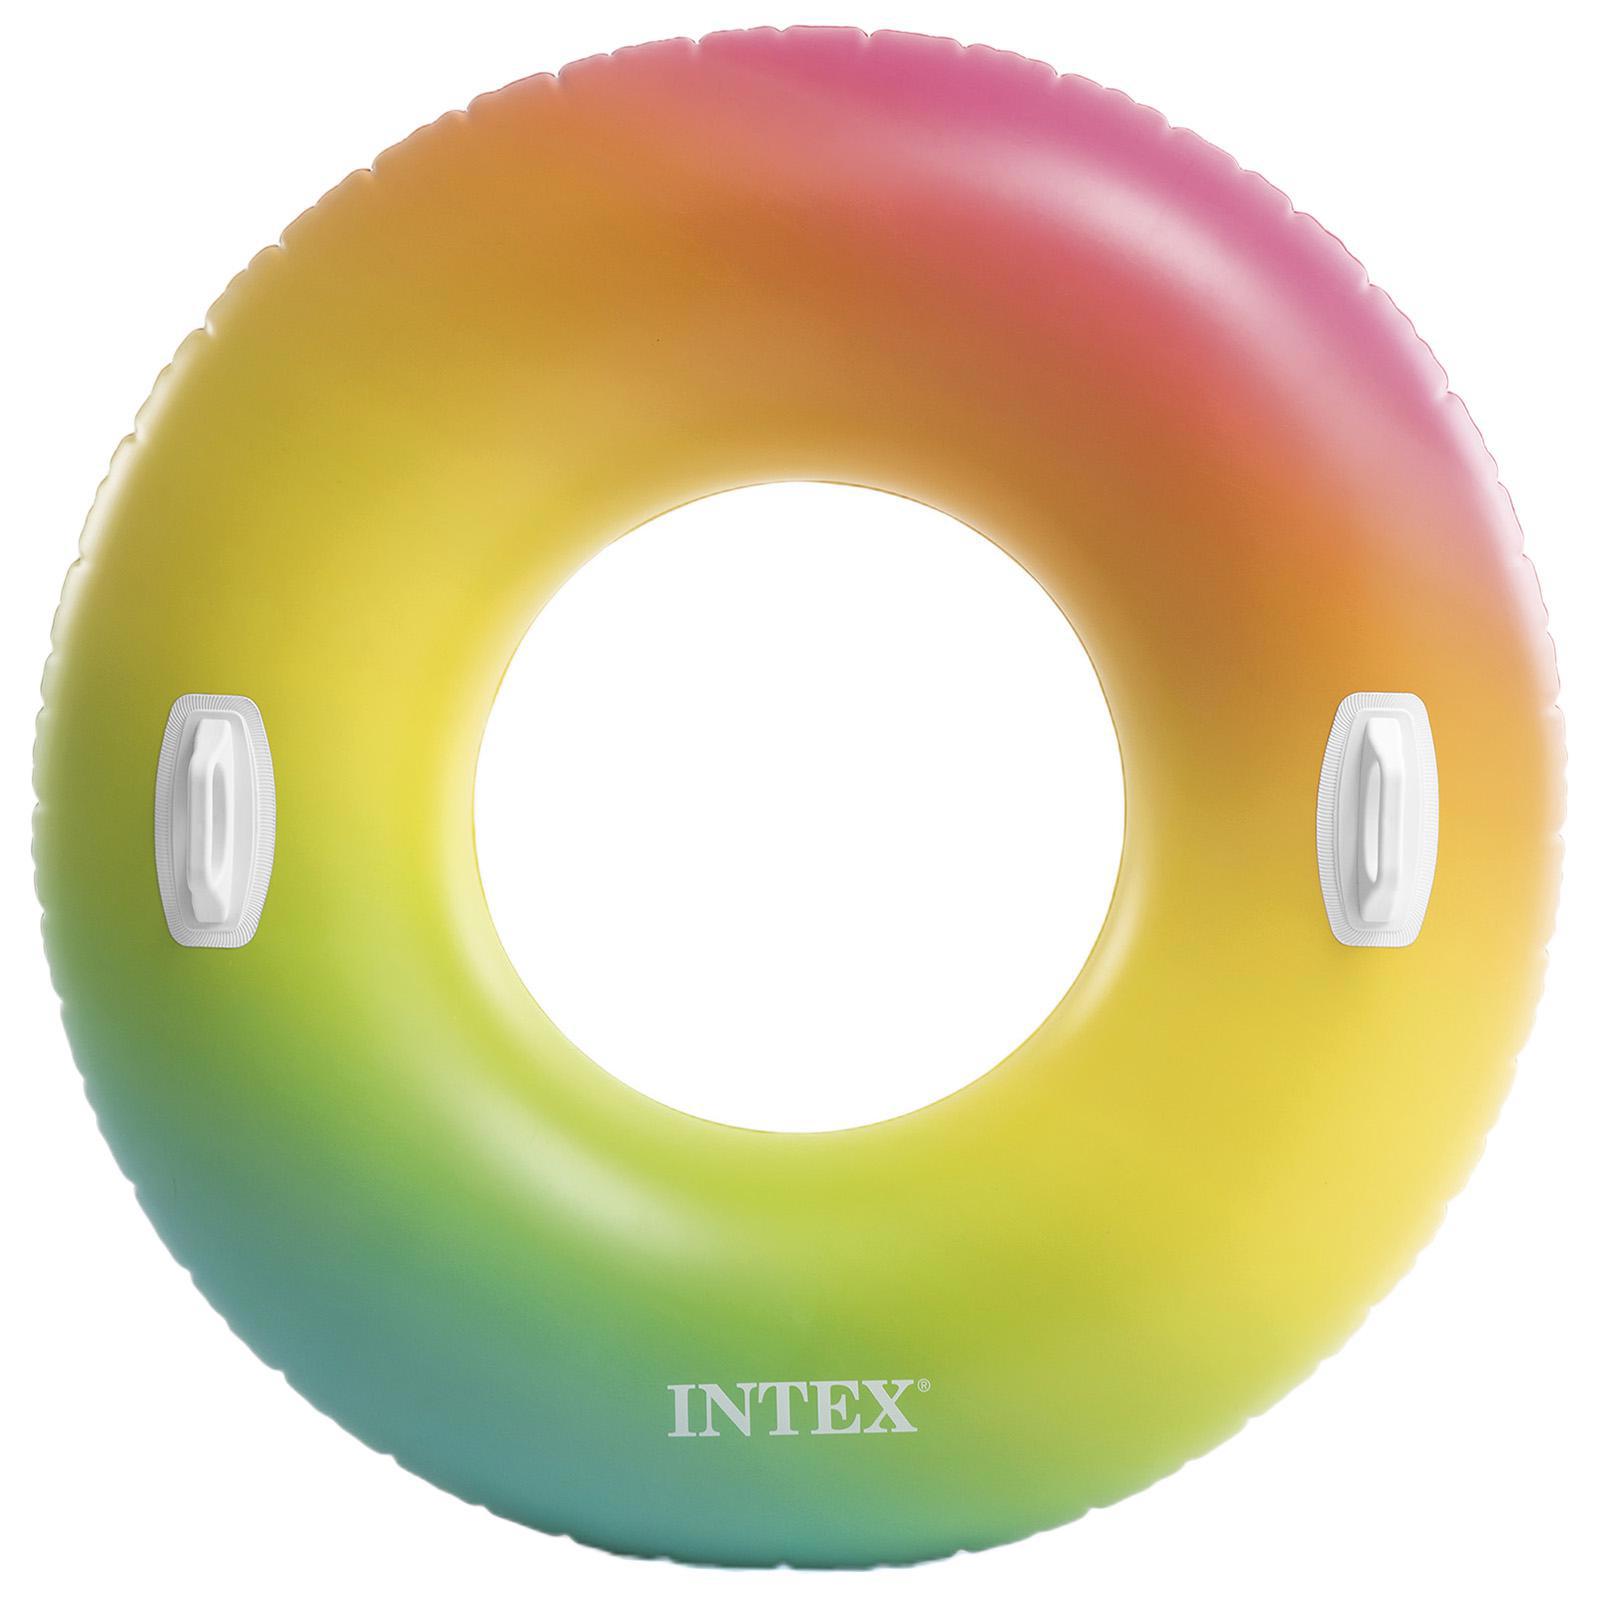 Надувные круги intex. Круг надувной 122 см Intex 58202. Круг Intex цветной Вихрь 122x122. Круг надувной Intex 58202eu. Круг Intex монстр шина 114x114 см.